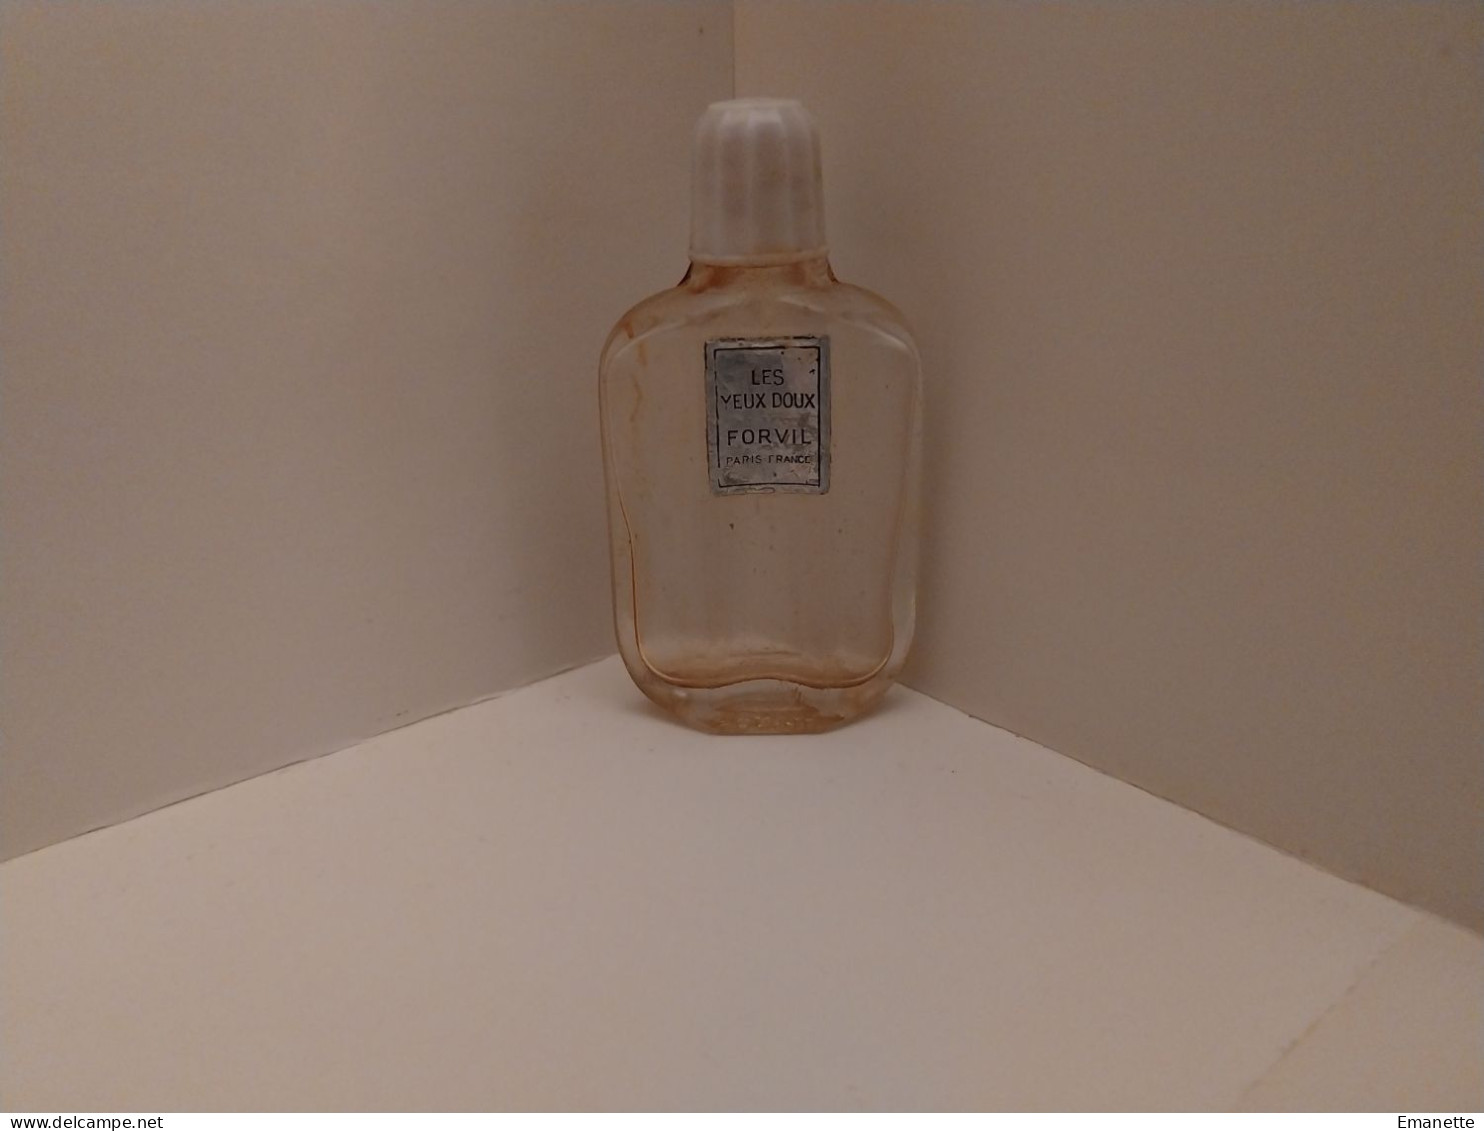 Les Yeux Doux De Forvil - Miniature Bottles (without Box)